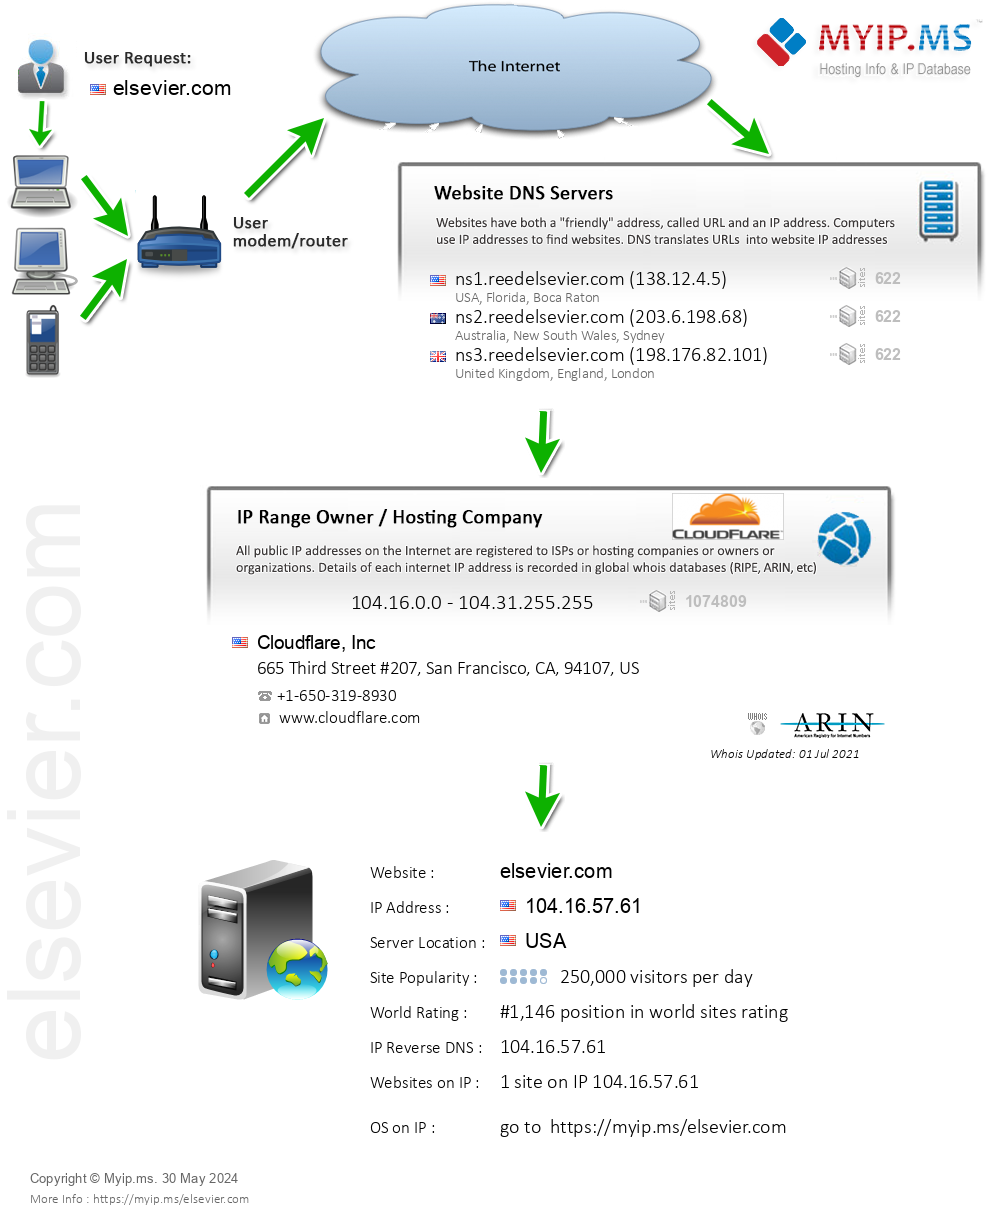 Elsevier.com - Website Hosting Visual IP Diagram